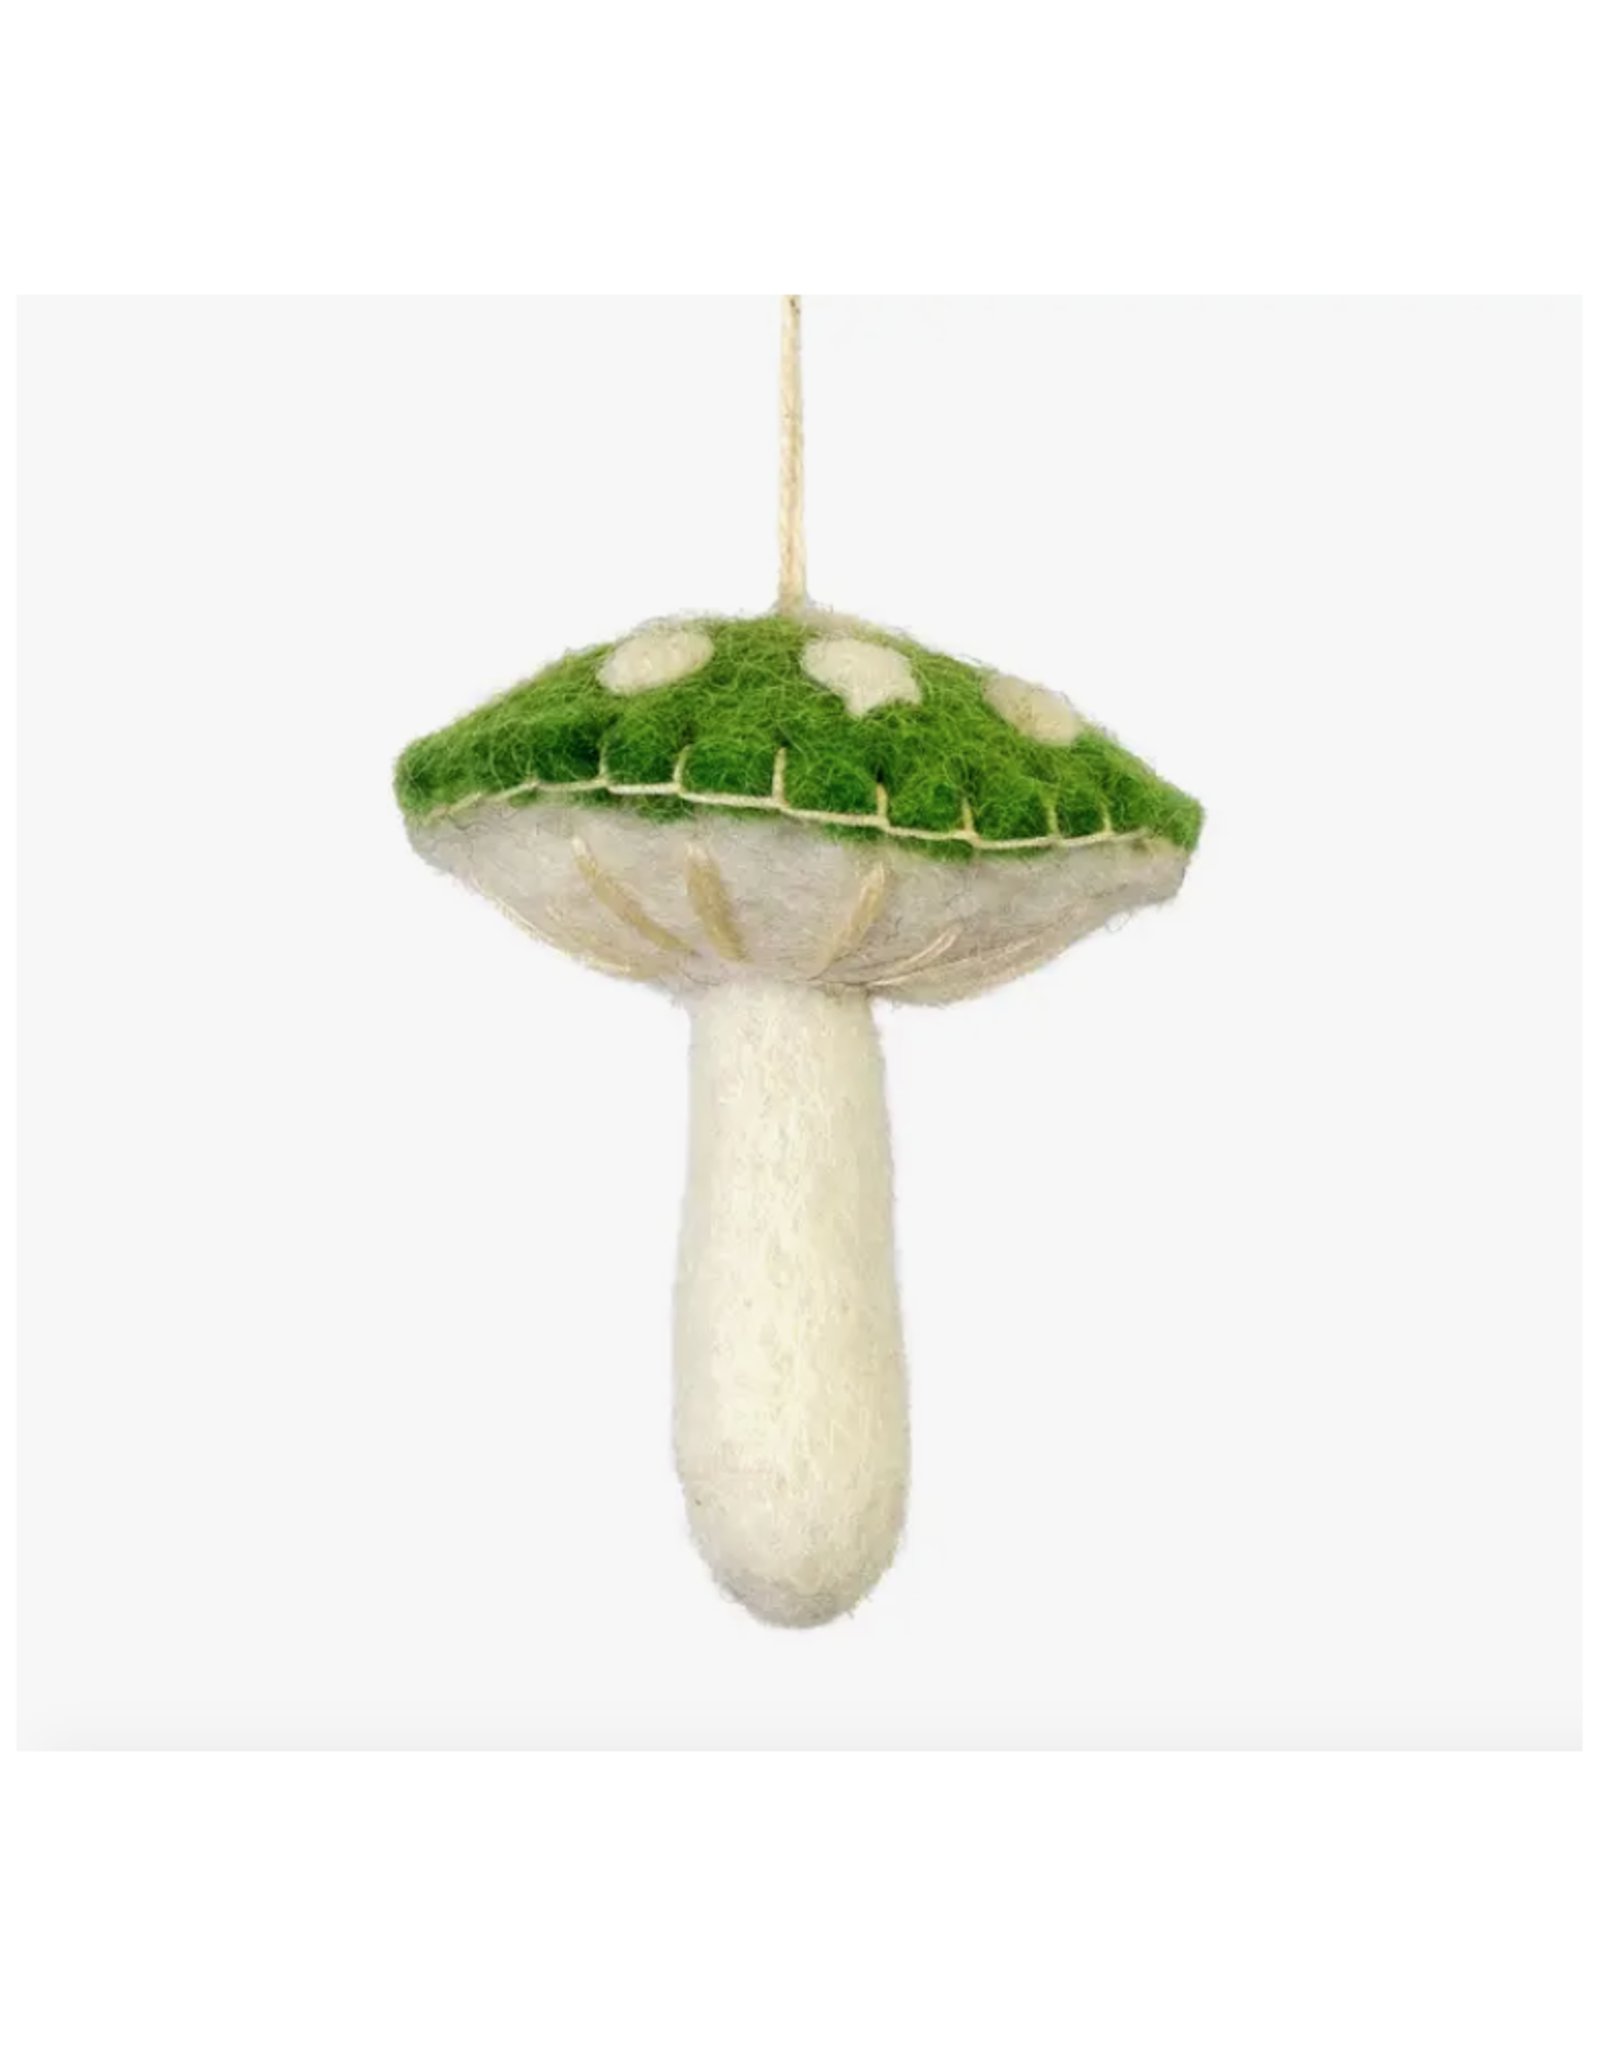 Green Wild Mushroom Ornament *